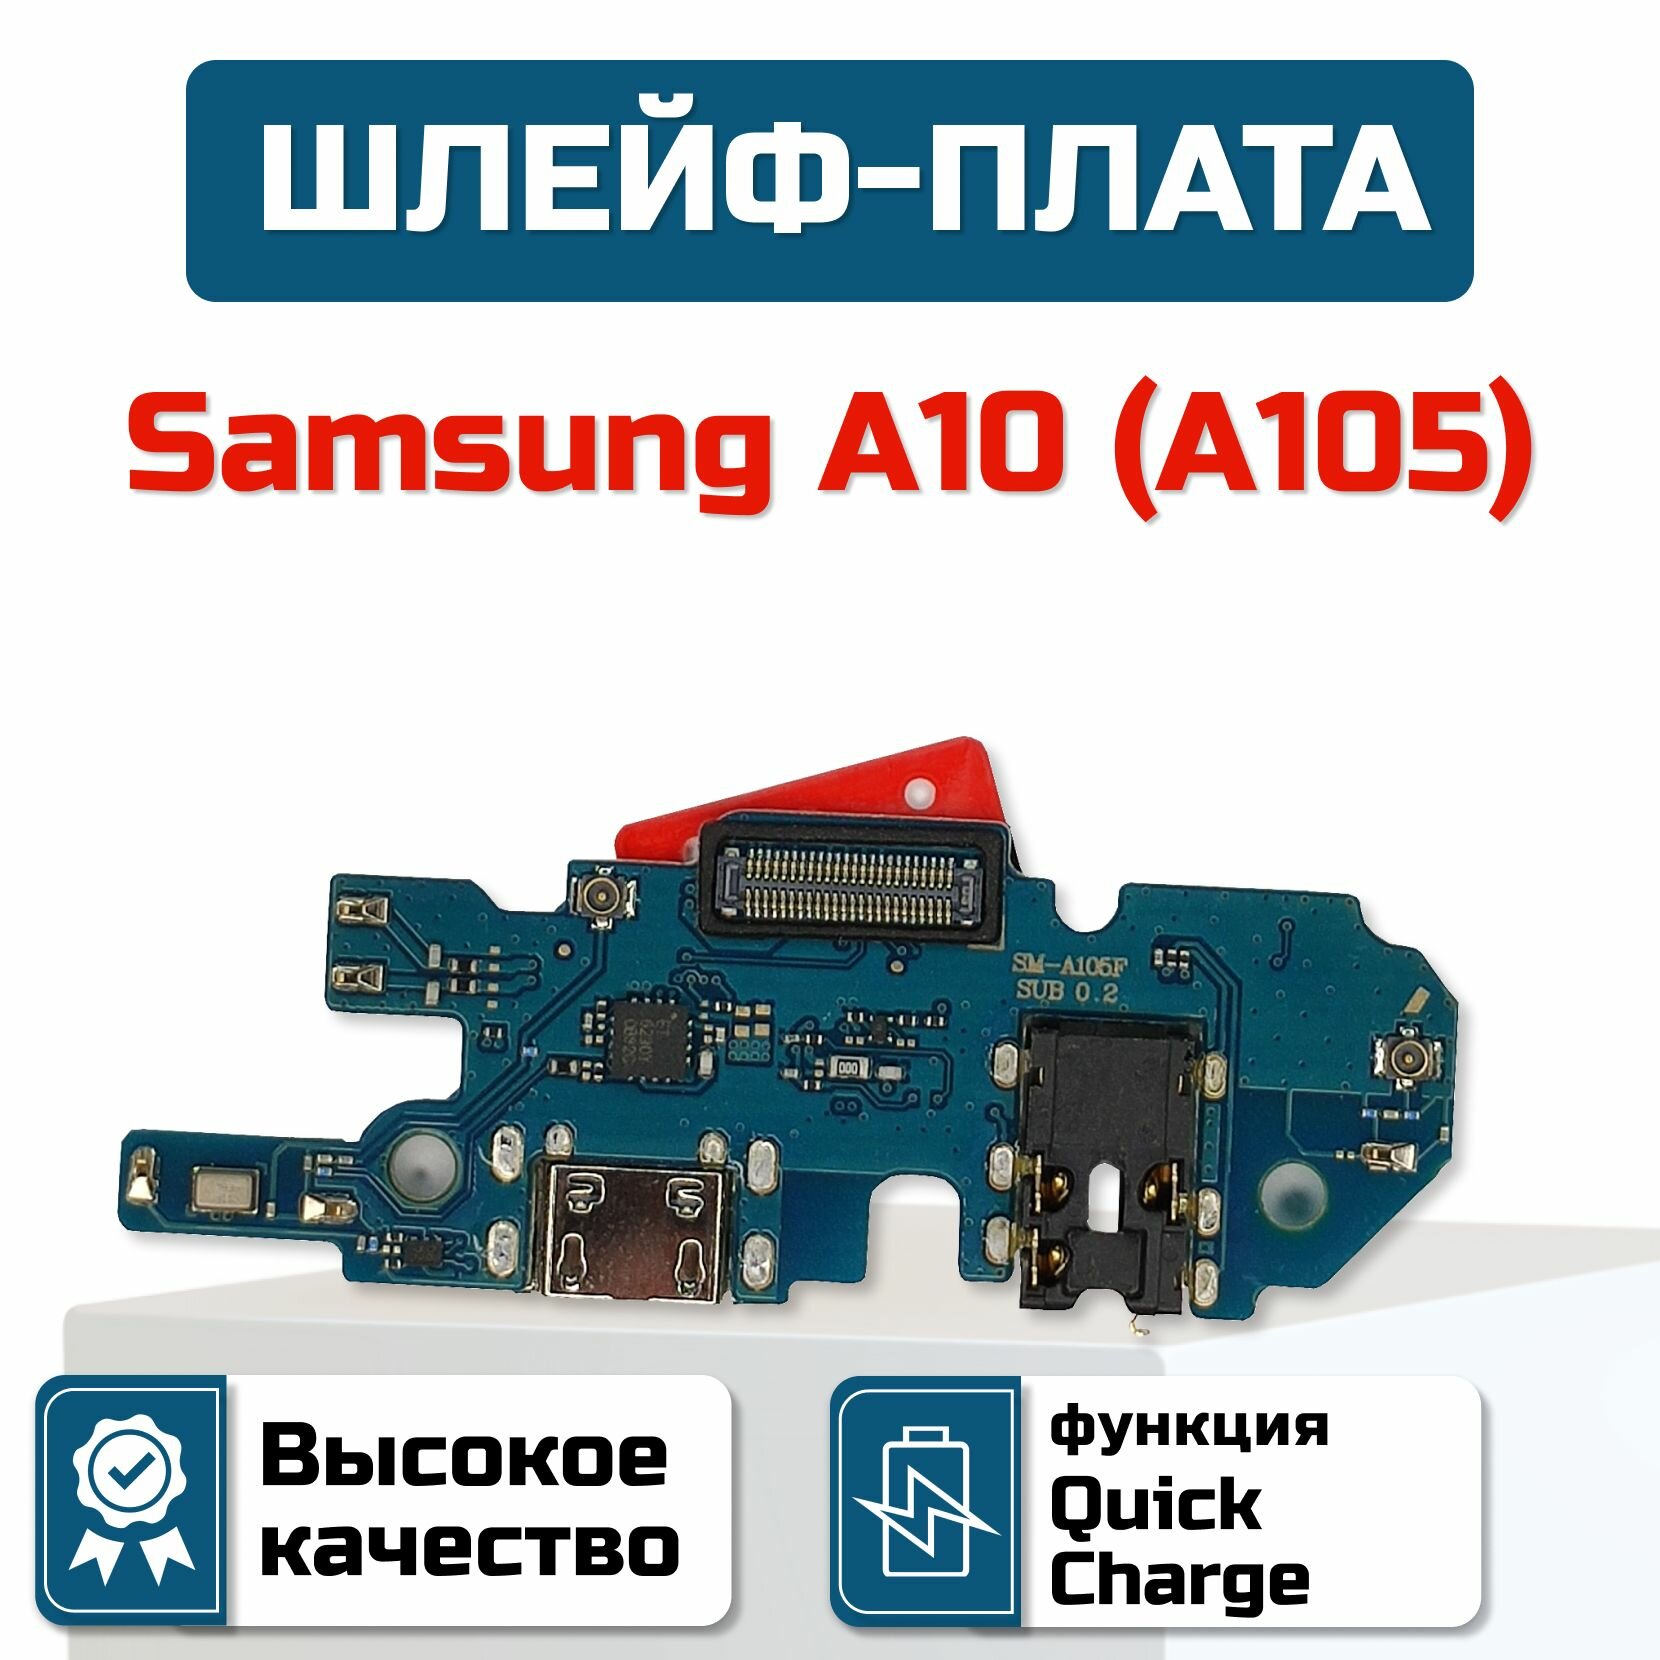 Шлейф-плата для Samsung Galaxy A10 (A105)